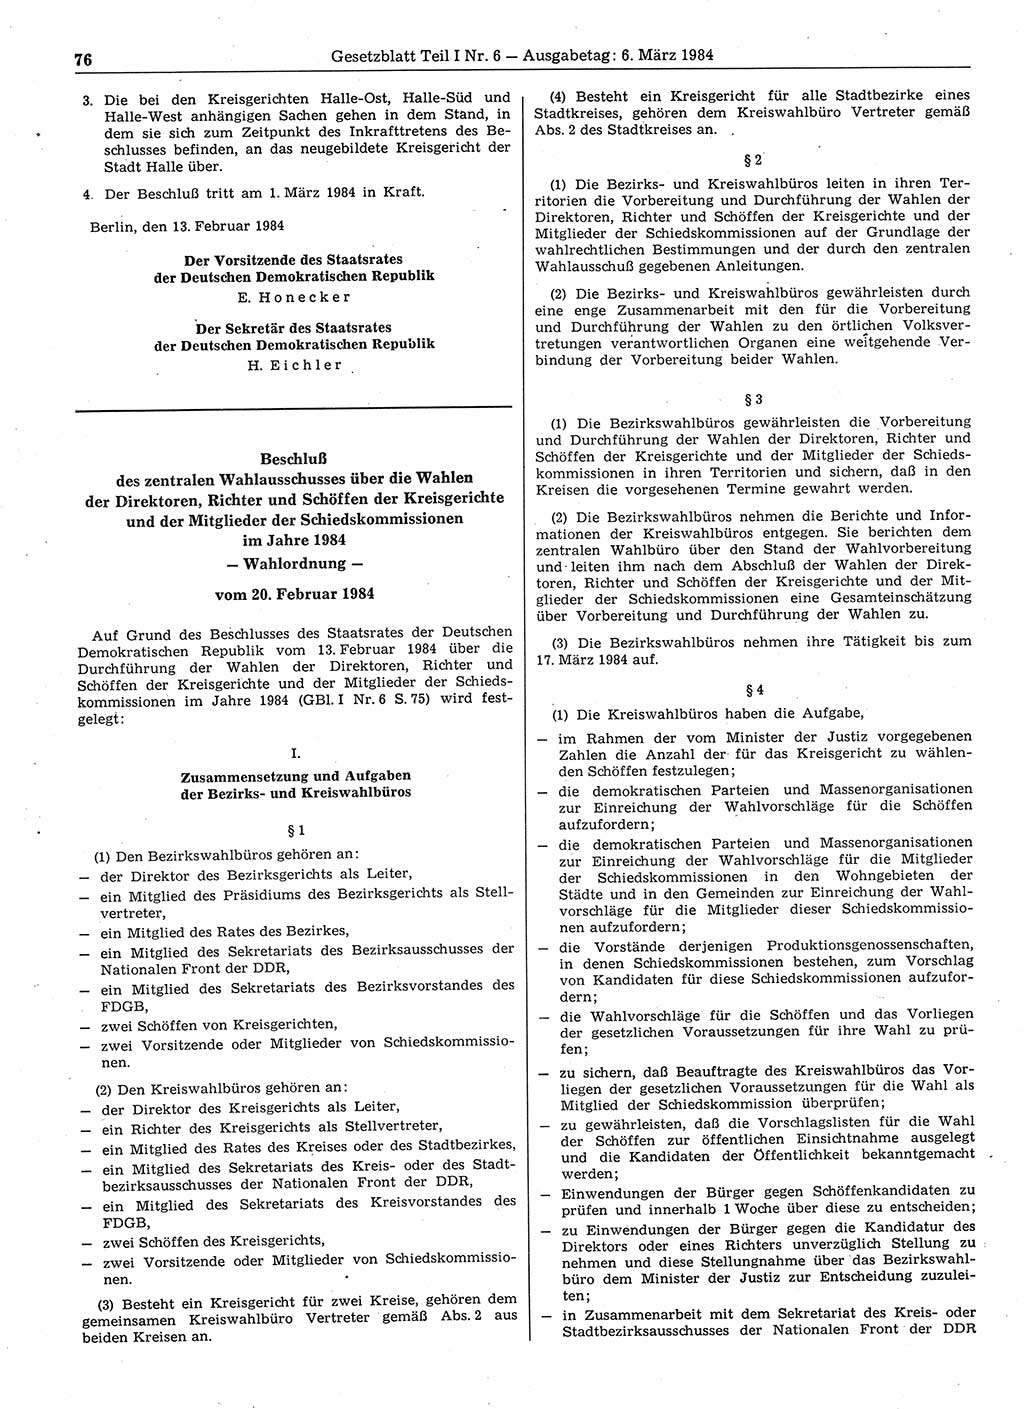 Gesetzblatt (GBl.) der Deutschen Demokratischen Republik (DDR) Teil Ⅰ 1984, Seite 76 (GBl. DDR Ⅰ 1984, S. 76)